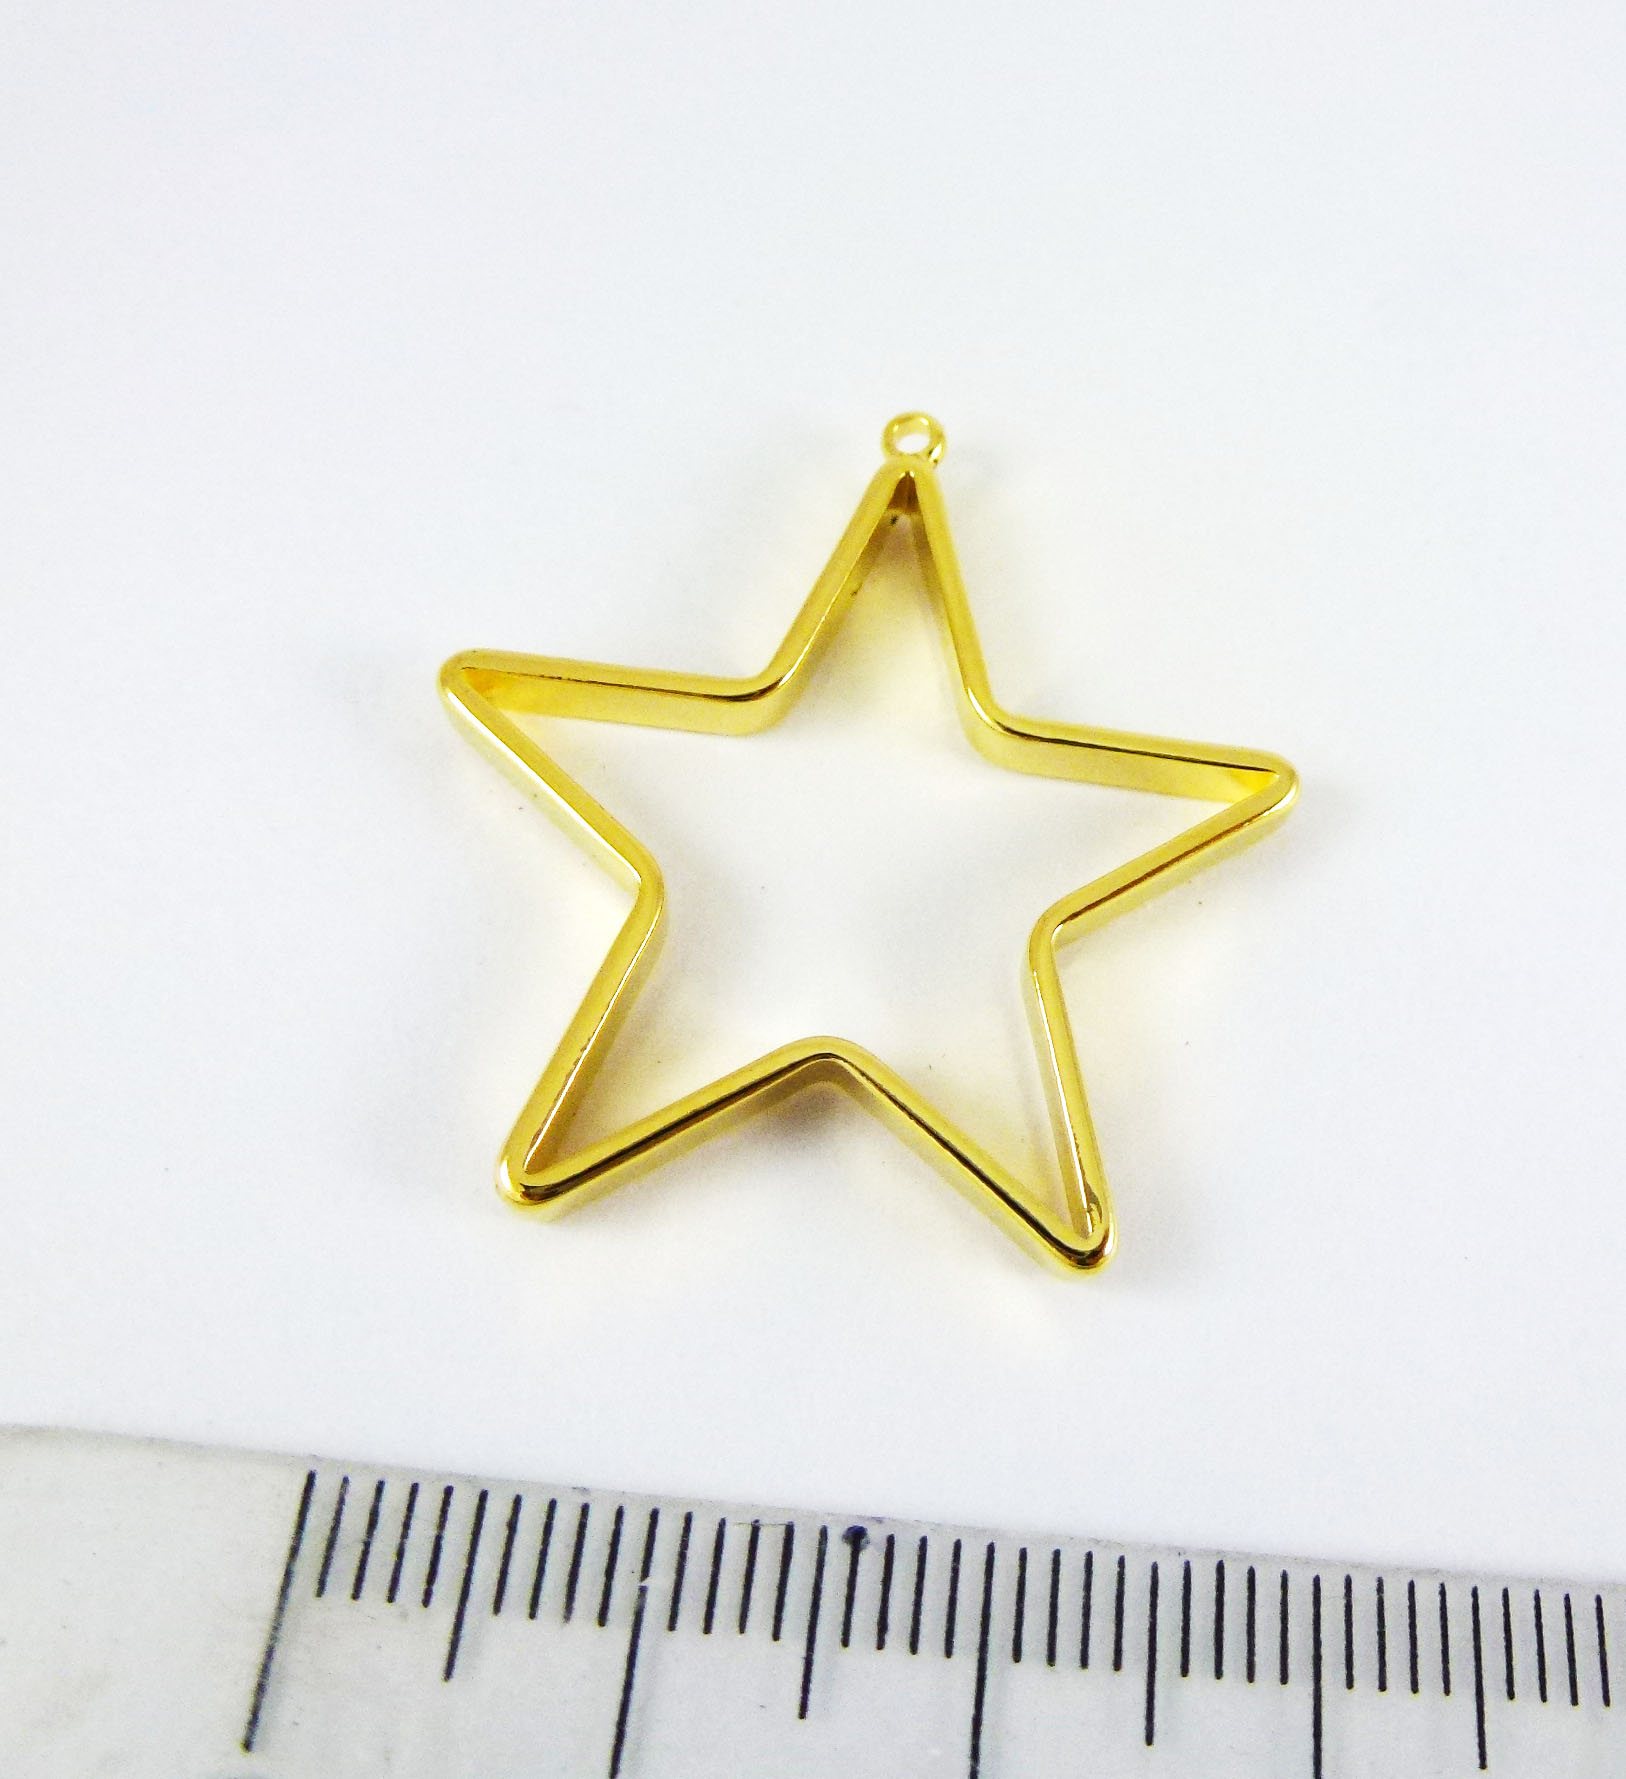 3x30mm銅鍍金色單孔五角星